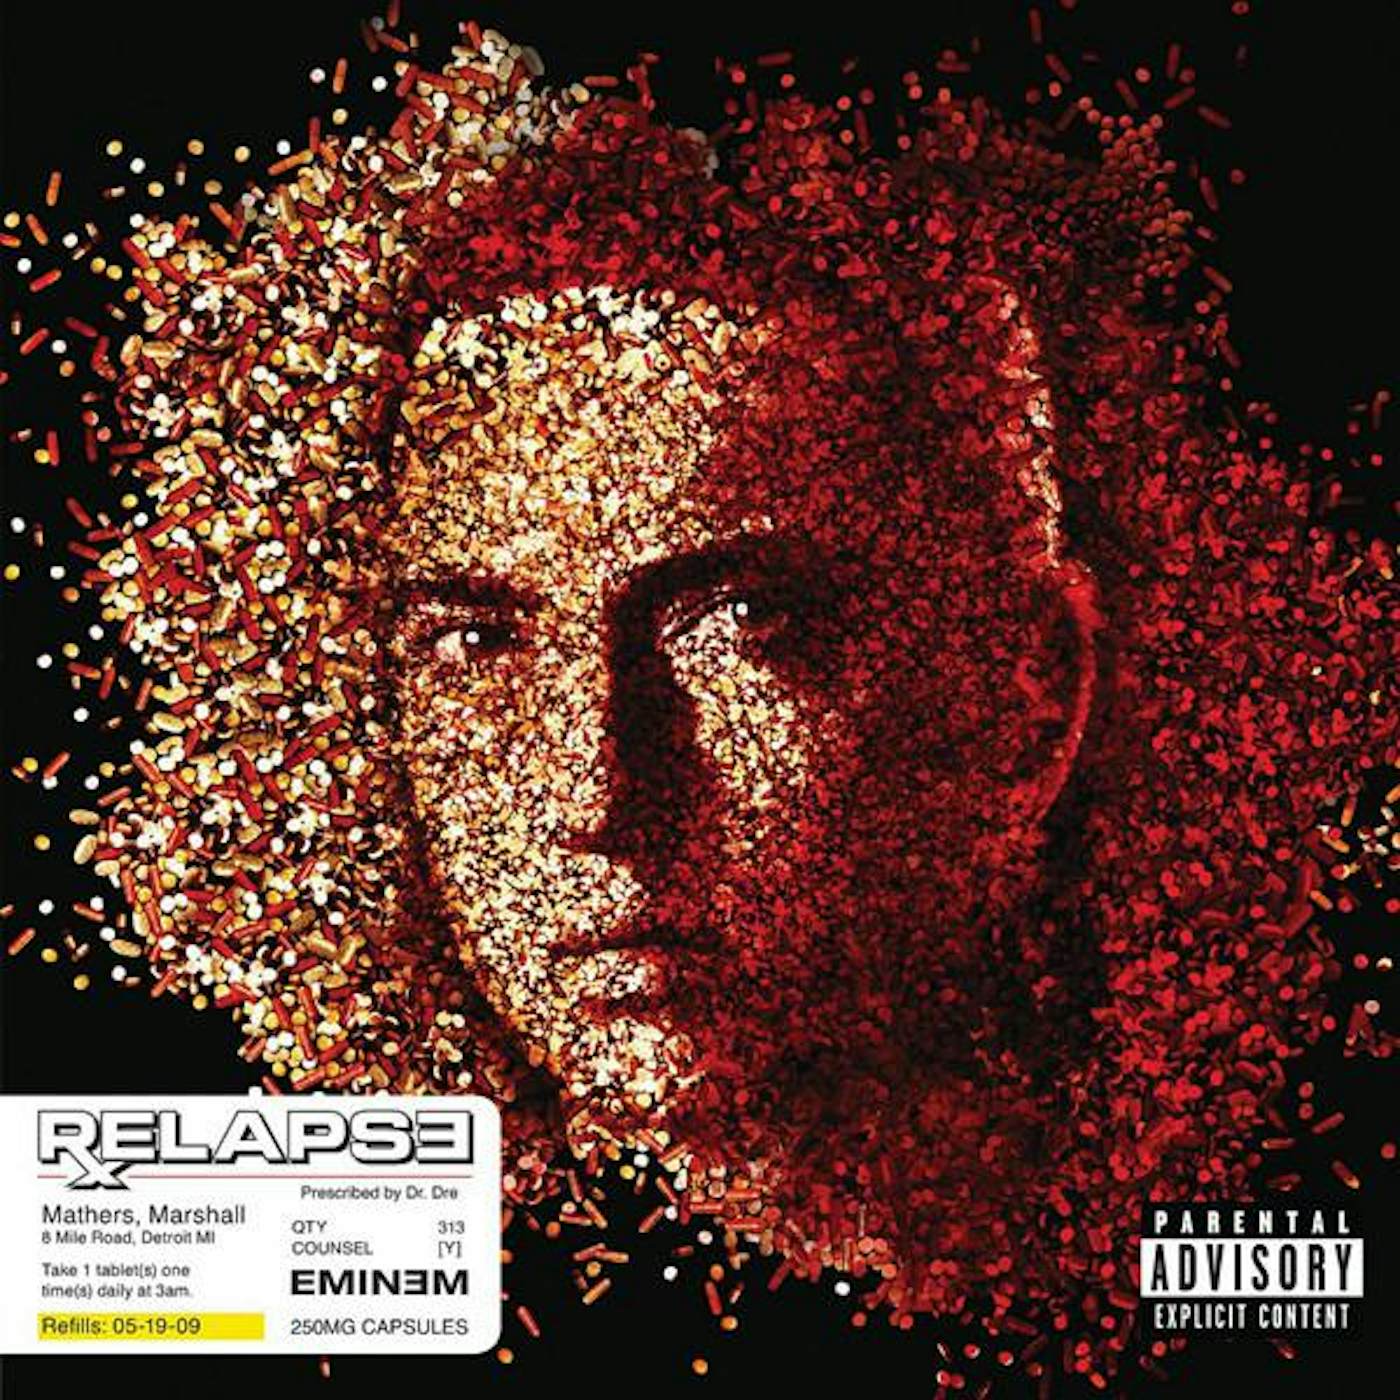 Eminem RELAPSE CD